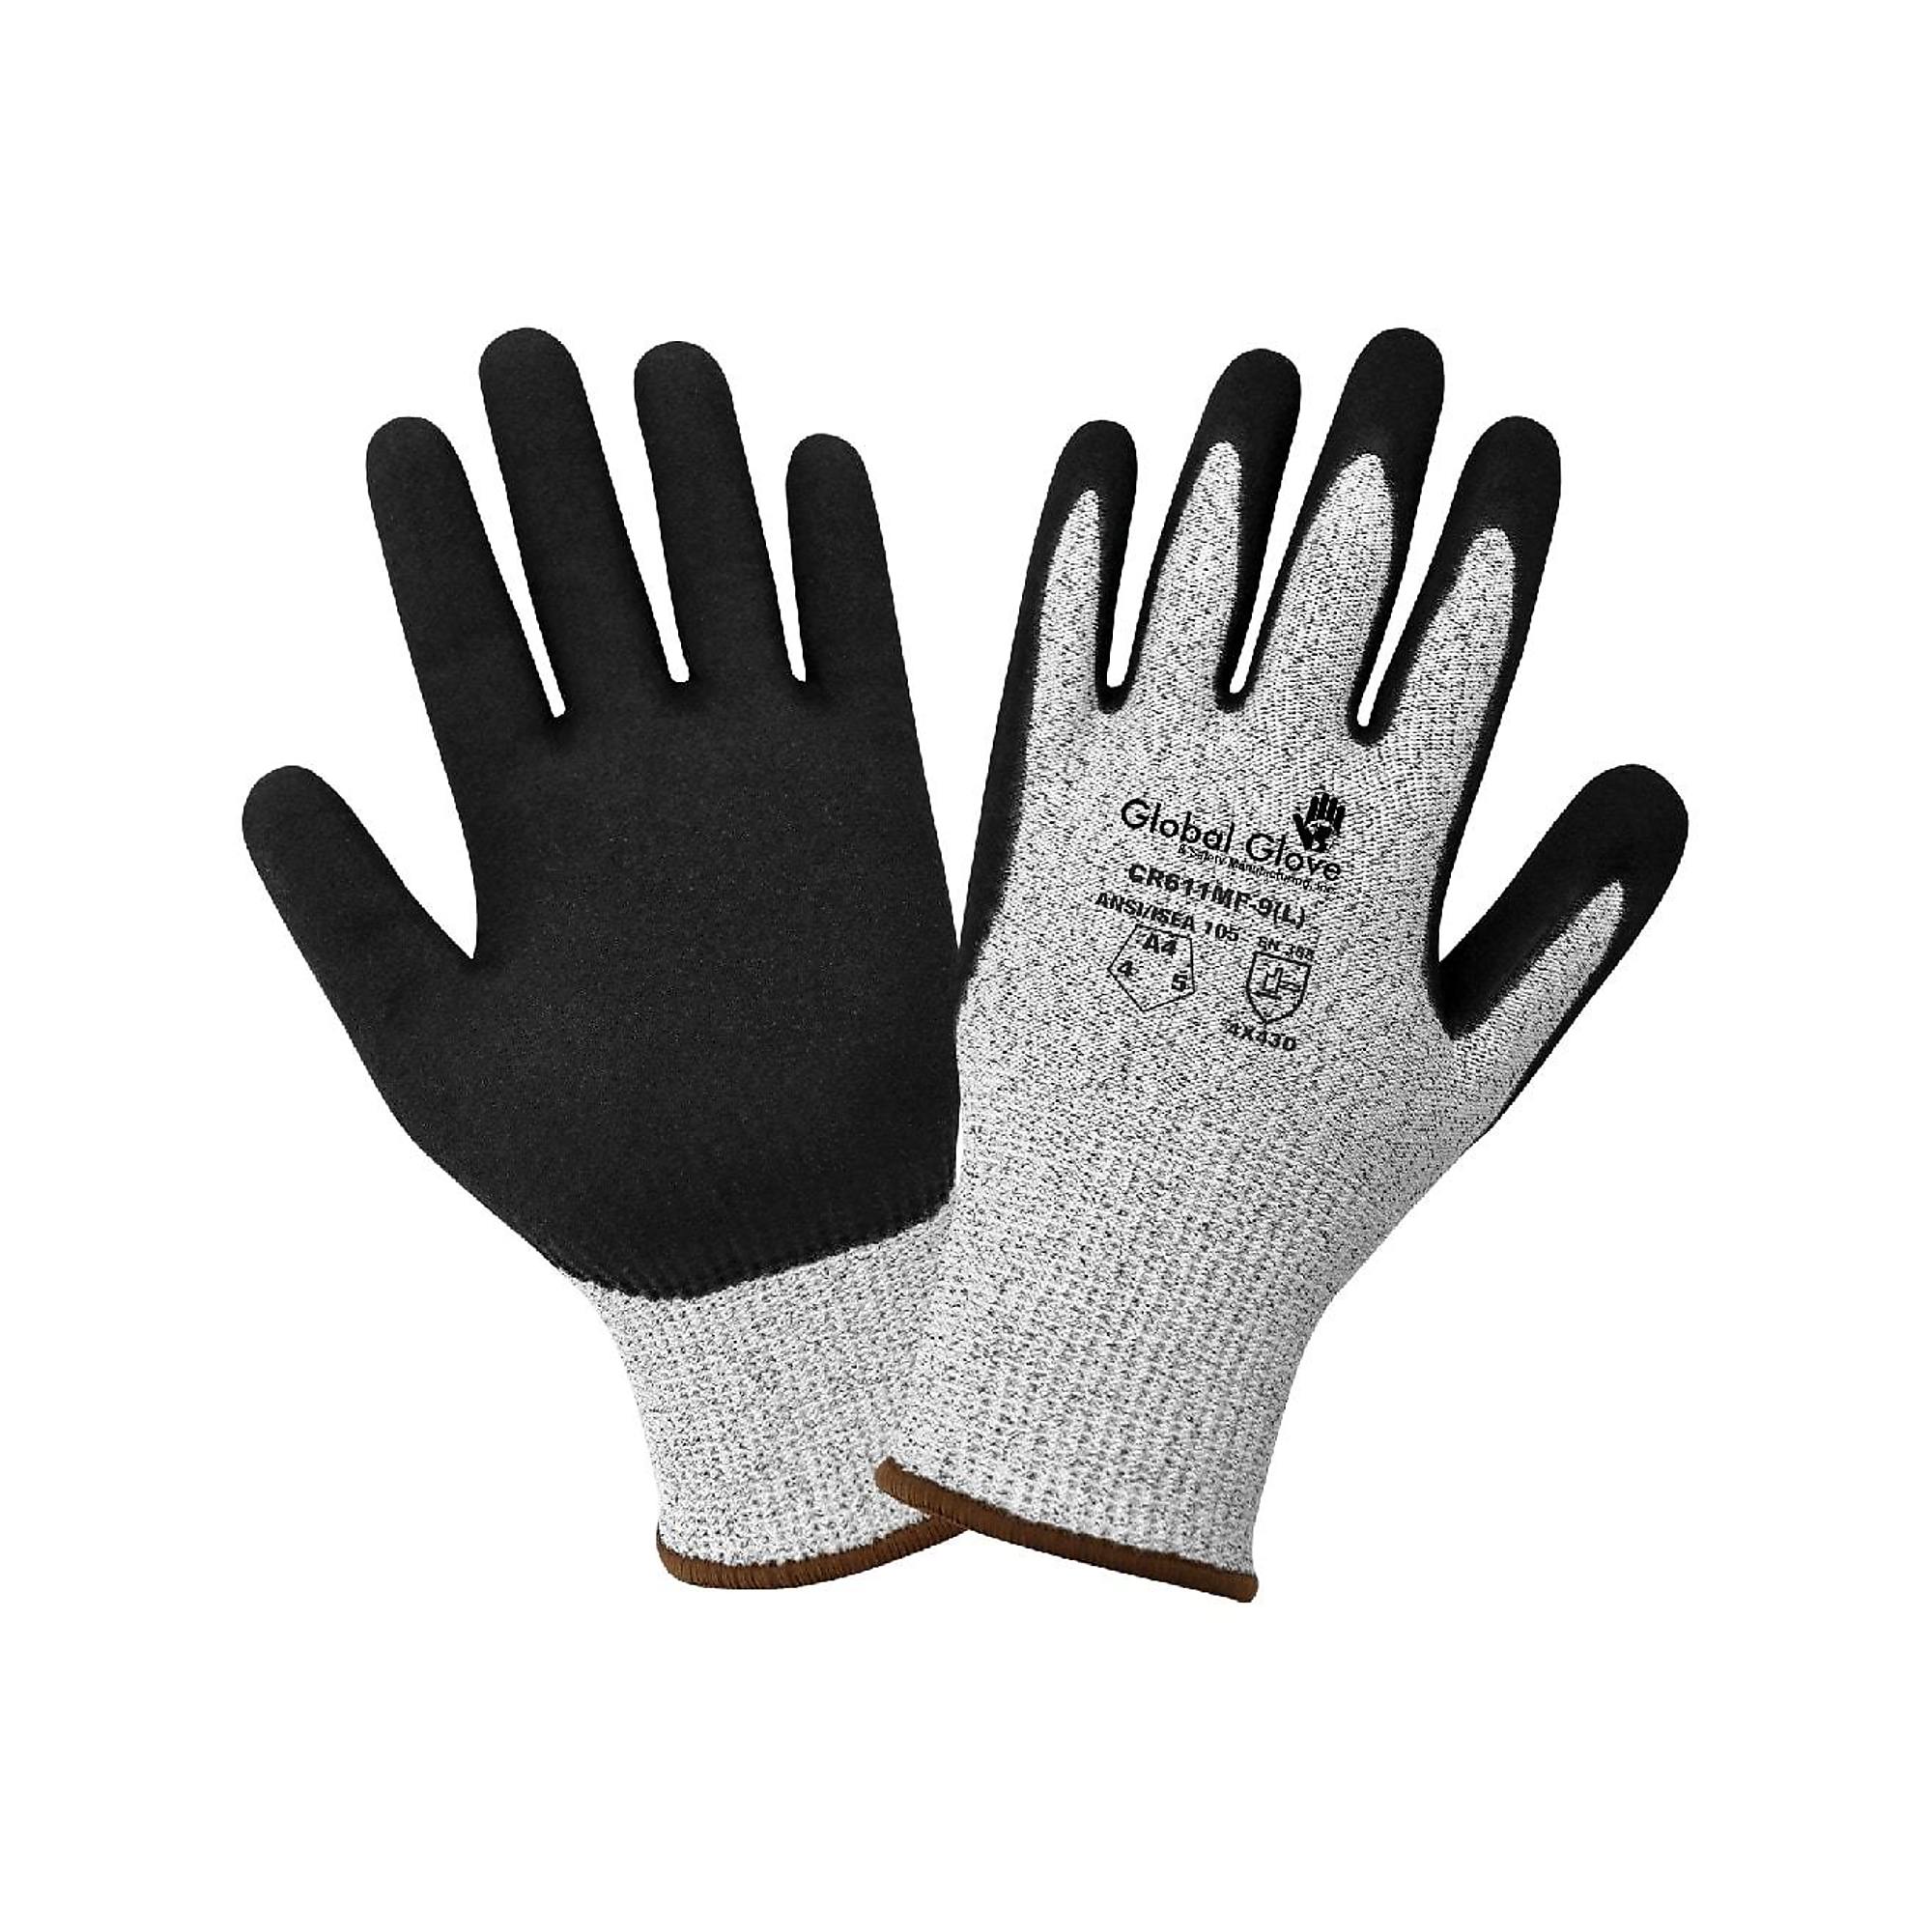 Global Glove, Nitrile Dipped Gloves, L, Gray, Model CR611MF-9(L)